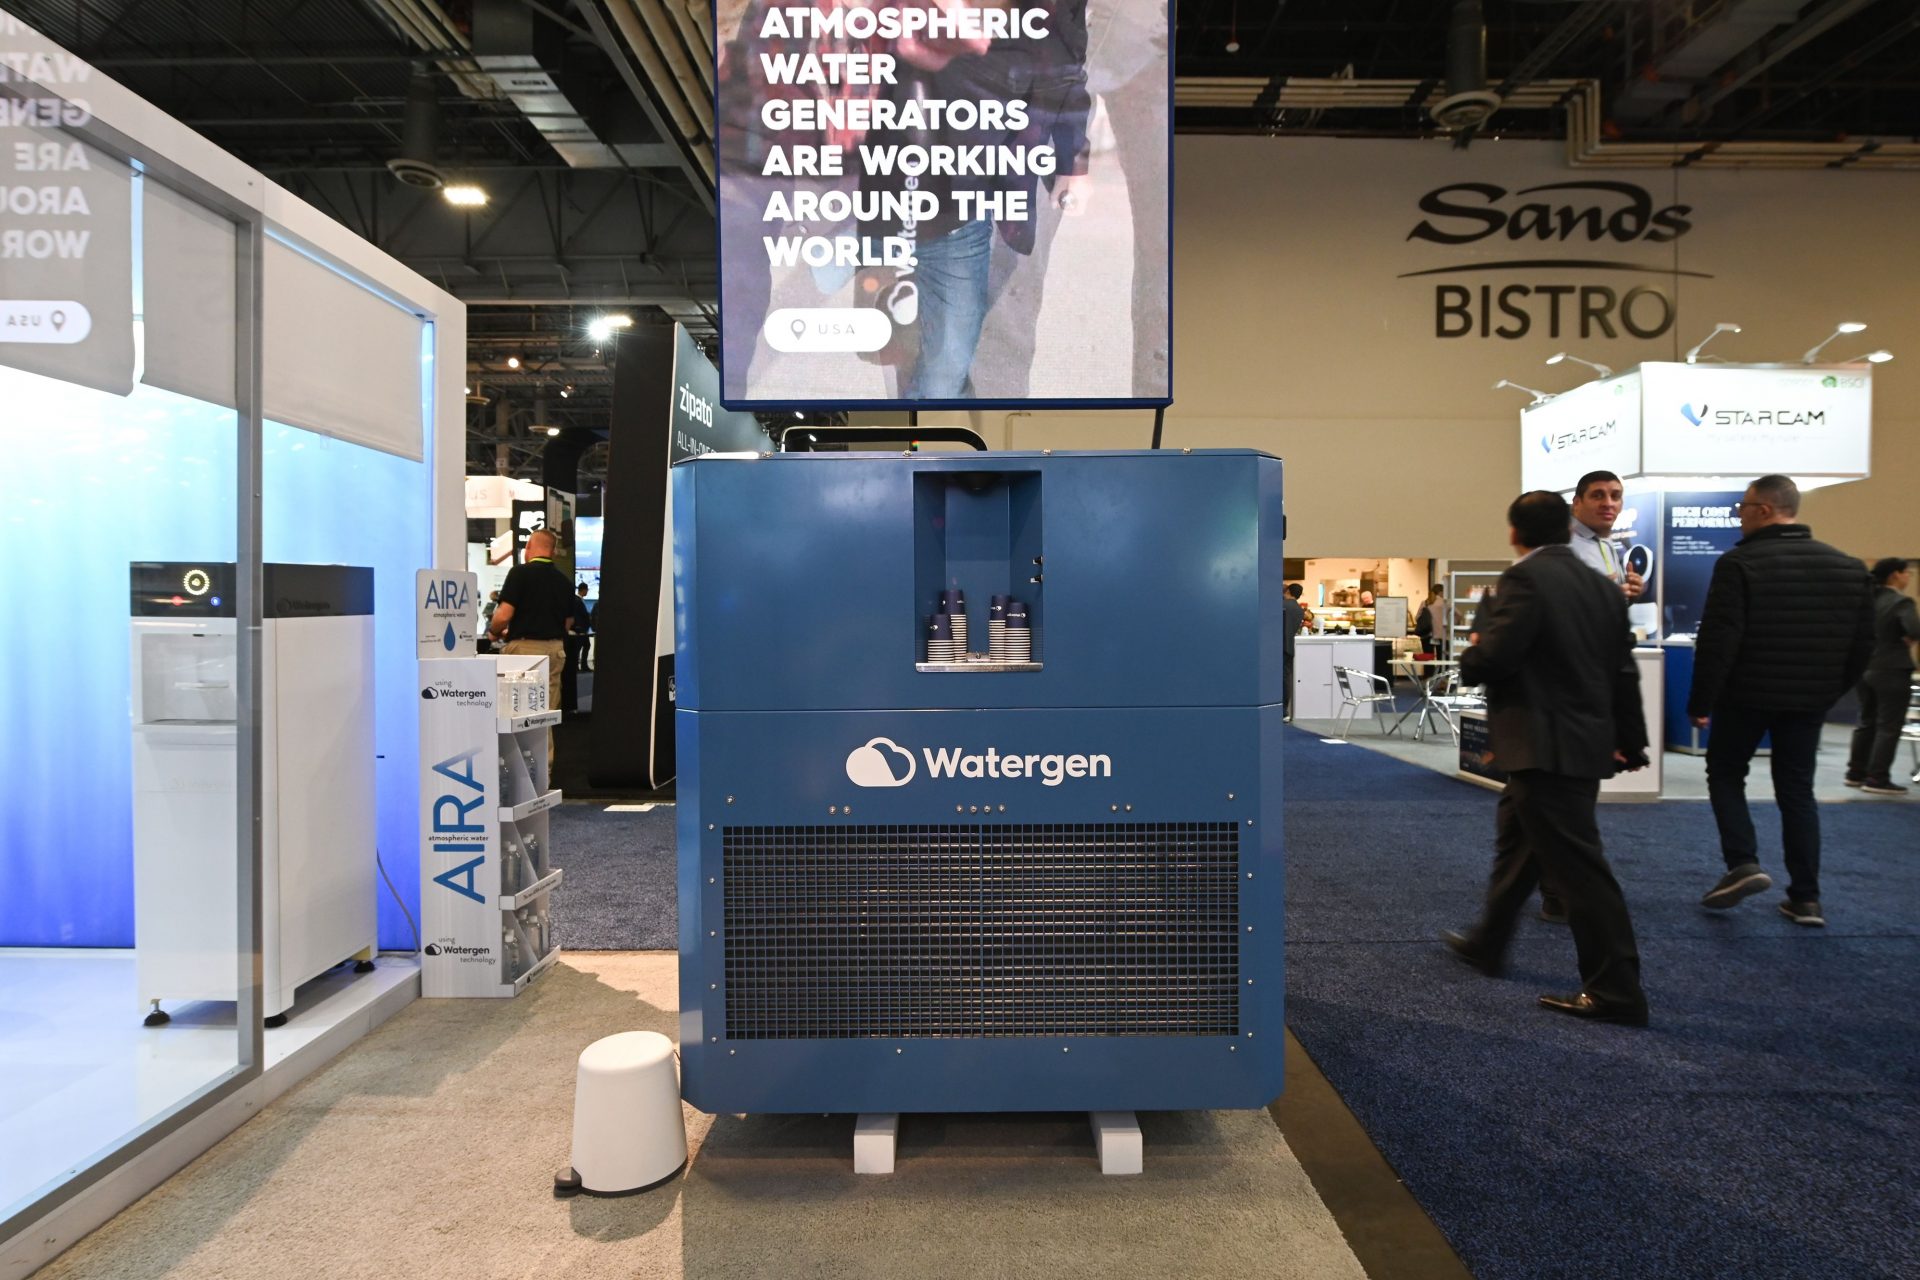 Générateurs d'eau atmosphérique